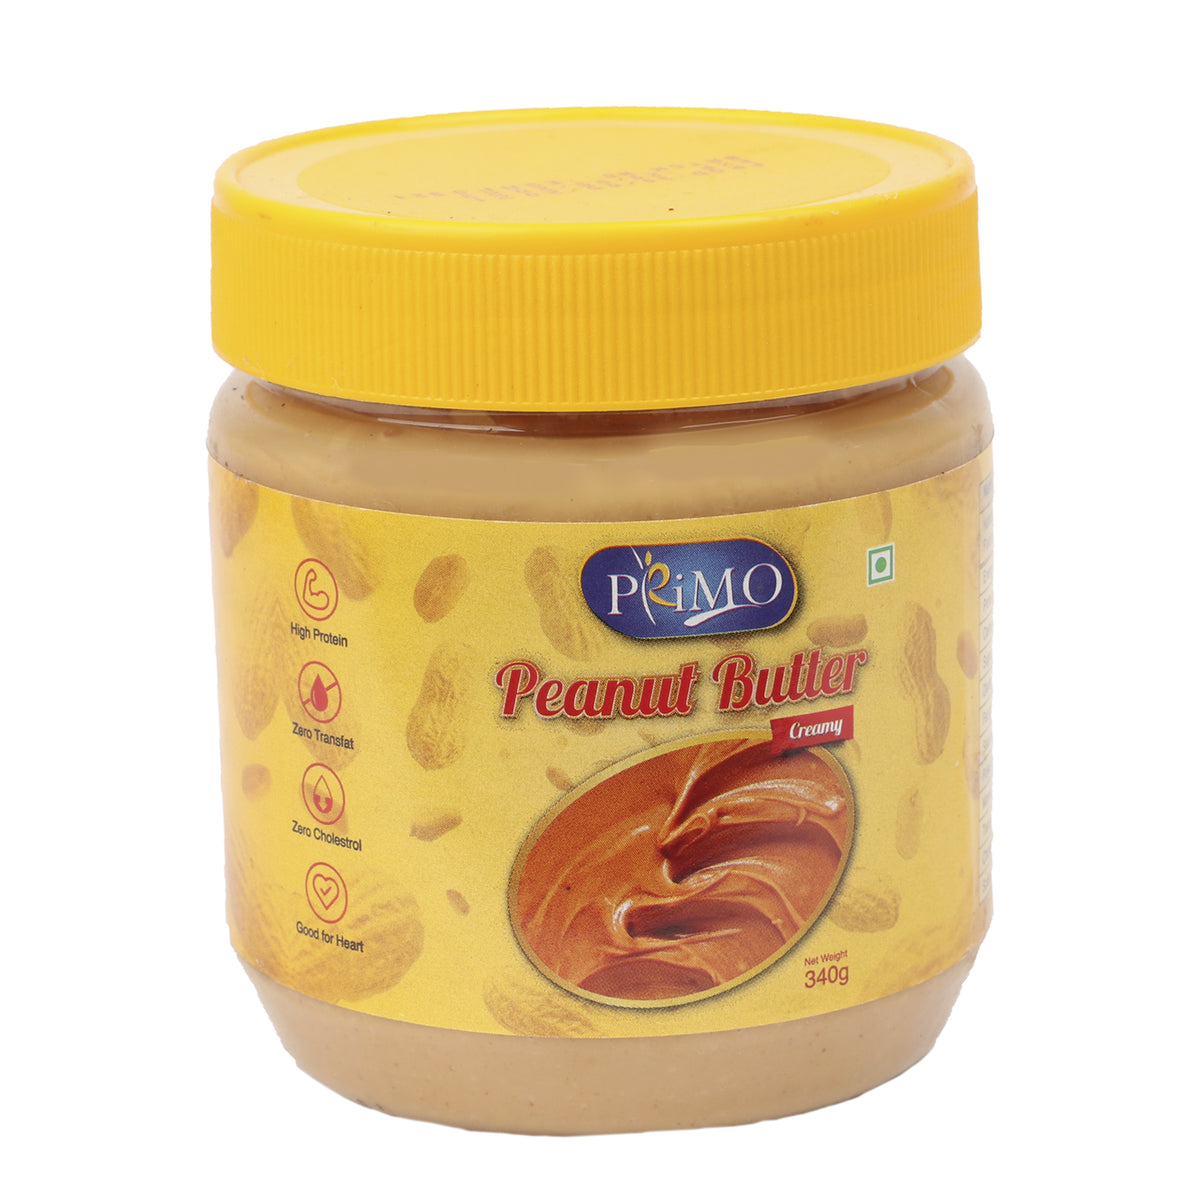 Primo Peanut Butter Creamy 340G